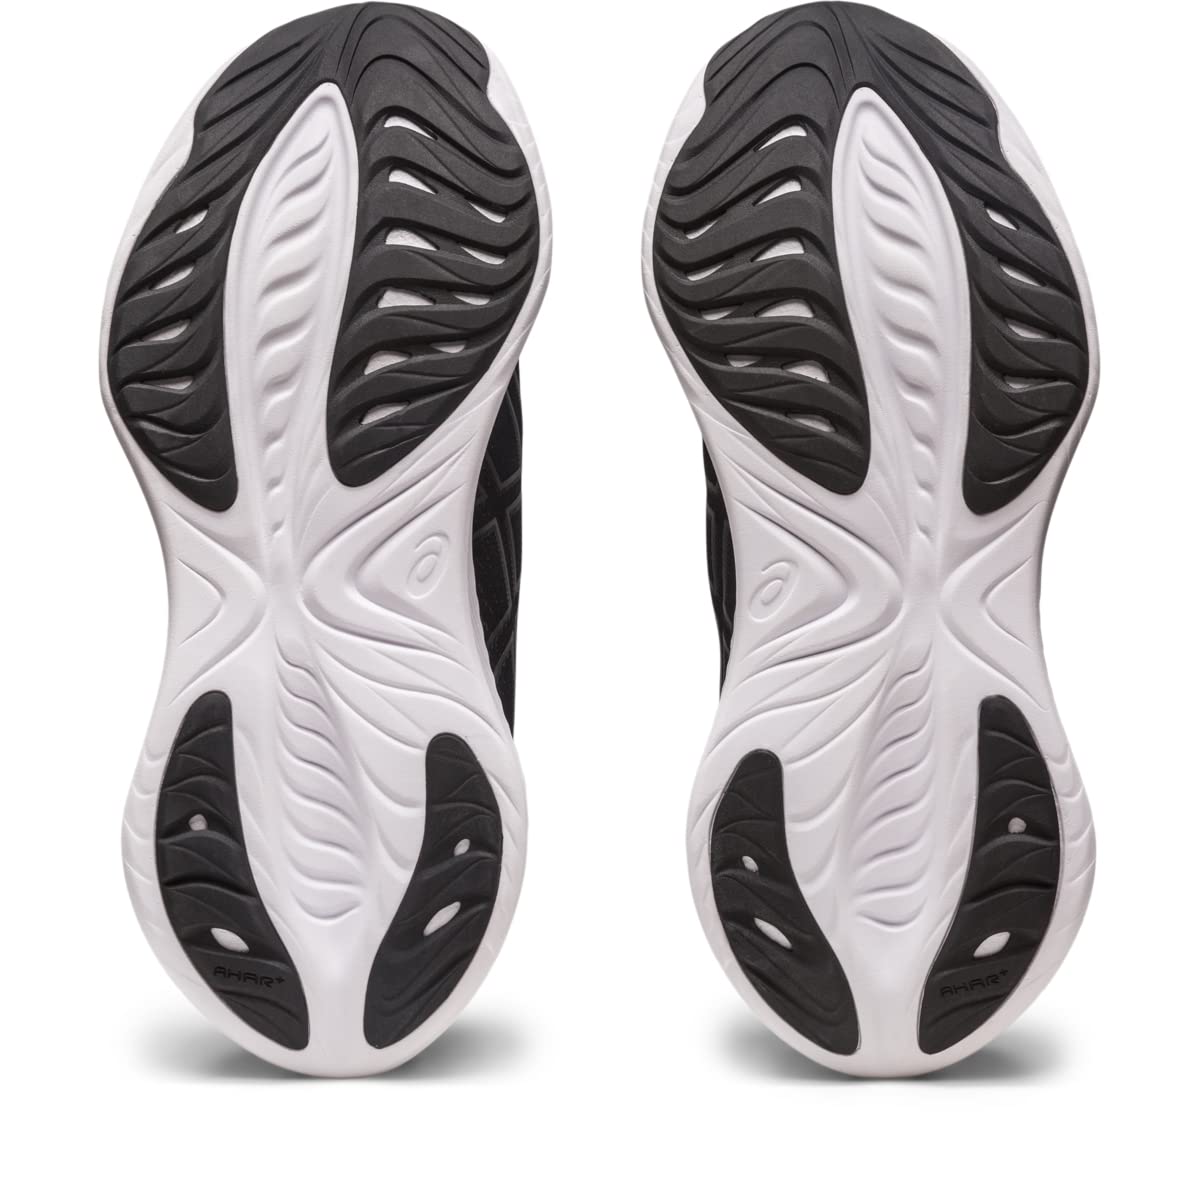 ASICS Men's Gel-Cumulus 25 Running Shoes